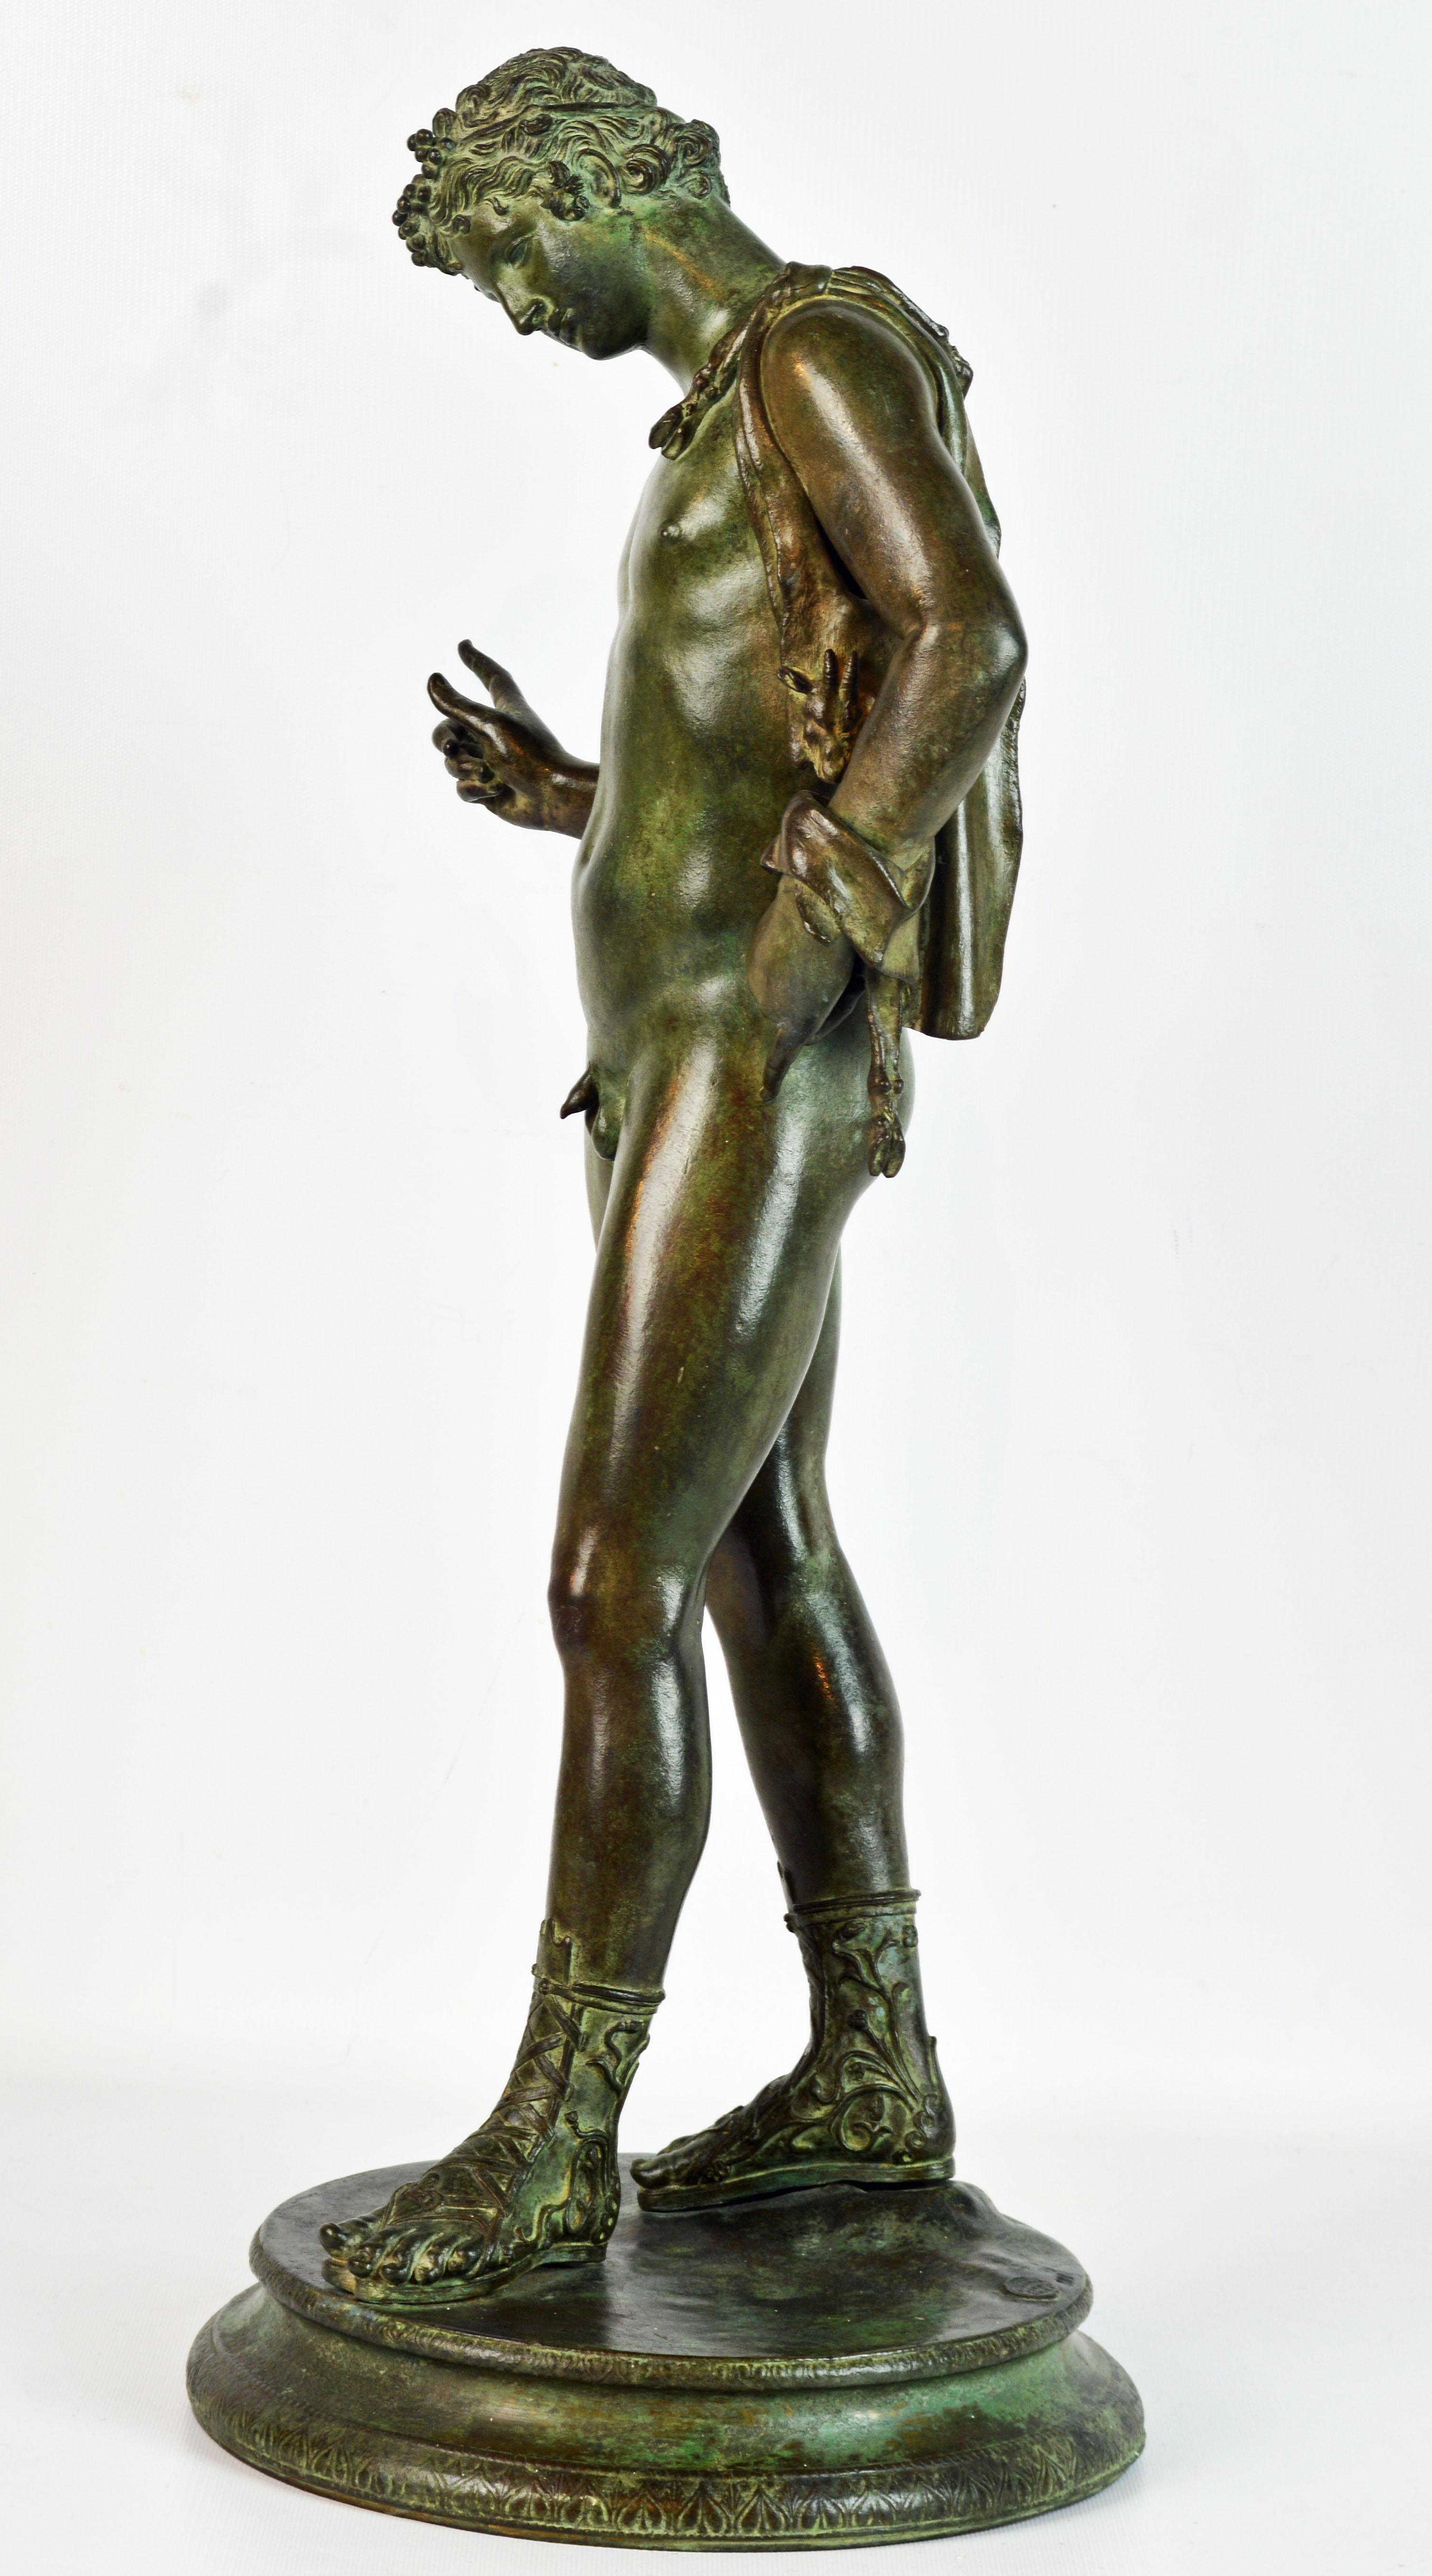 Une grande statue en bronze magnifiquement patiné de Narcisse portant un sac à vin en peau de chèvre sur son épaule reposant sur une base ronde finement décorée. La base porte la marque de fonderie de Vicenzo Gemito et est numérotée. Cette figure